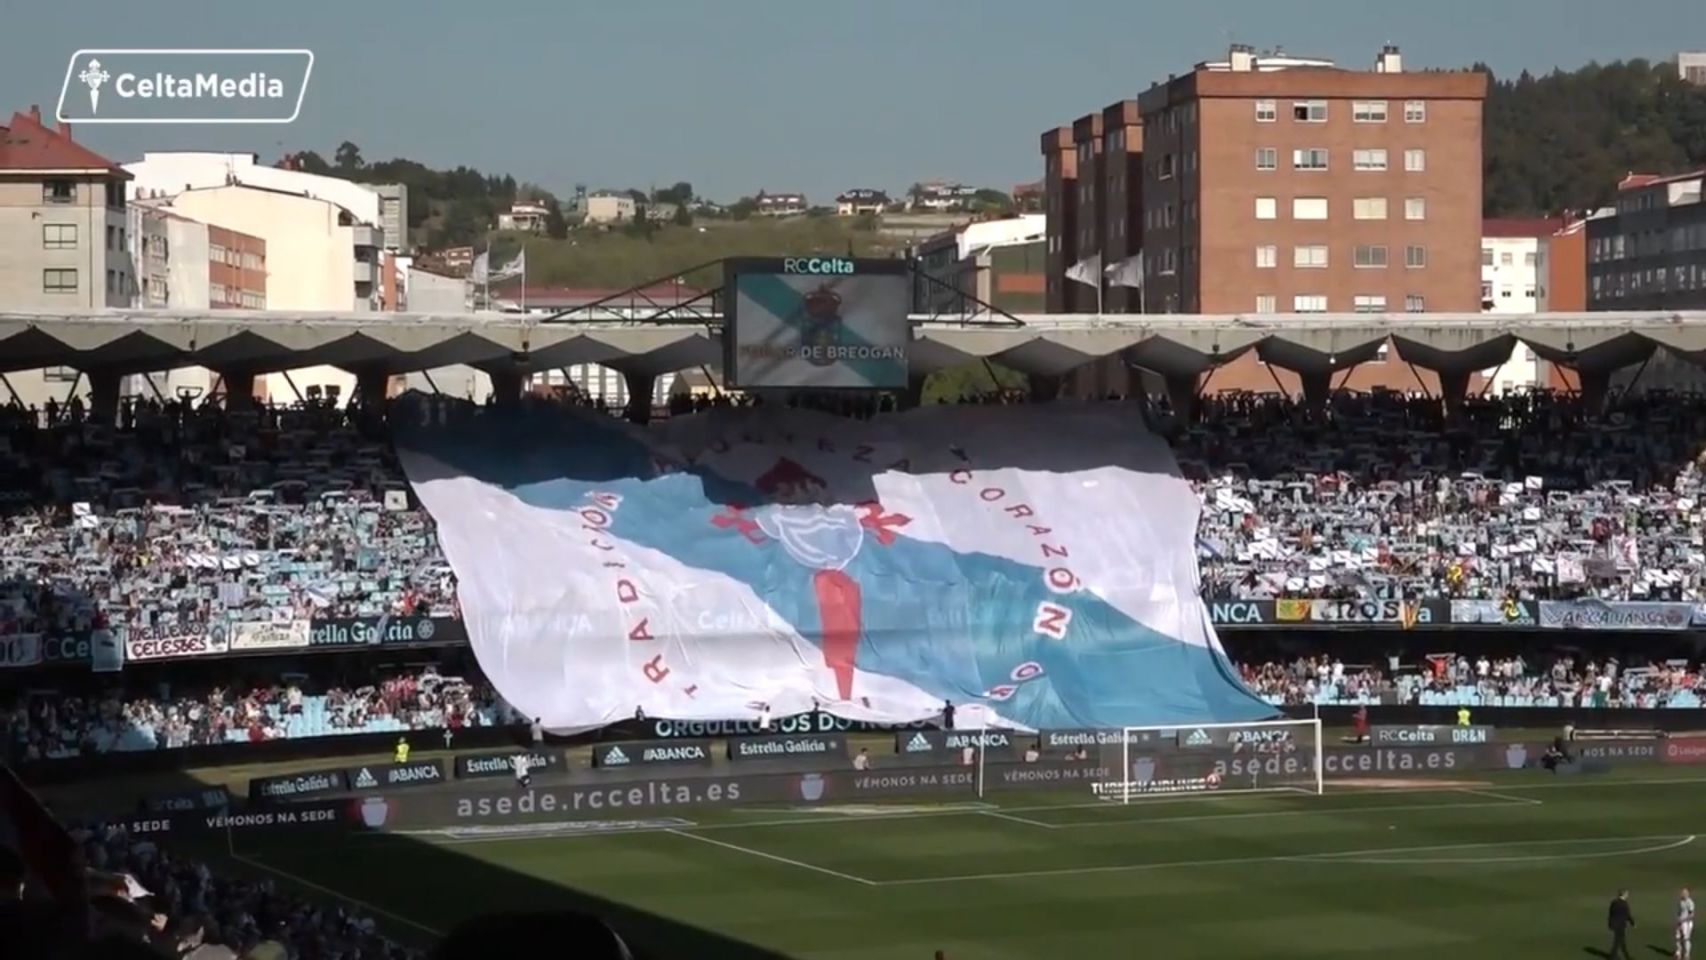 Tifo empregado durante o himno galego do derbi entre Celta e Deportivo en 2018 en Balaídos